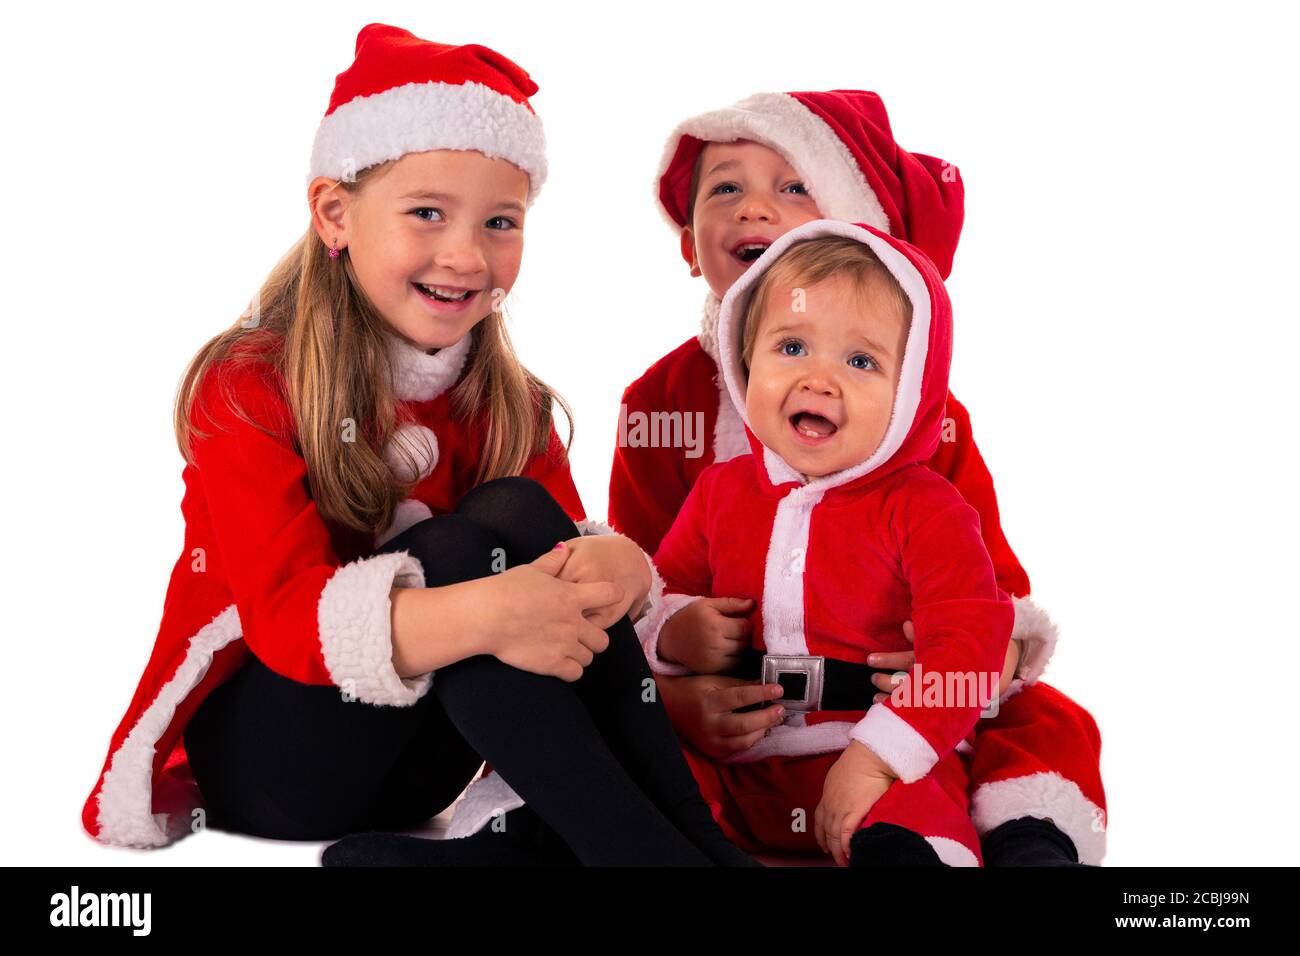 3 kleine Kinder, 2 Jungen (1 Jahr - 4 Jahre) 1 Mädchen (6 Jahre) sitzt zusammen auf dem Boden in einem Weihnachtsmann Kostüm lächelnd. Isoliert Stockfoto